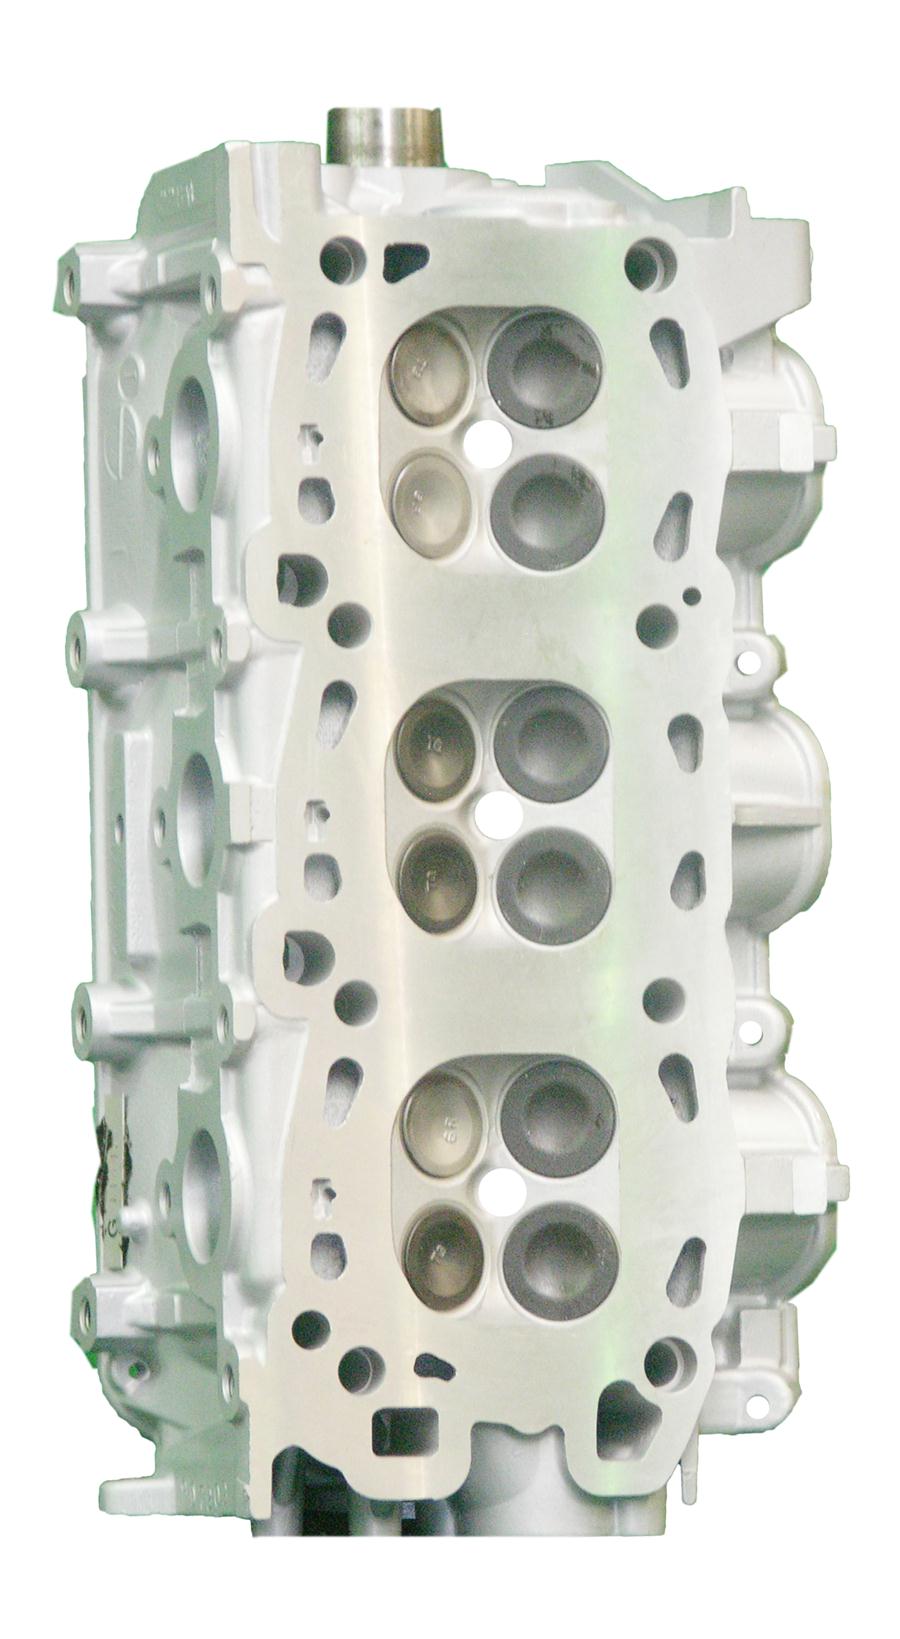 Mitsubishi 3.0 V6L Remanufactured Cylinder Head - 6/94-2003 6G72